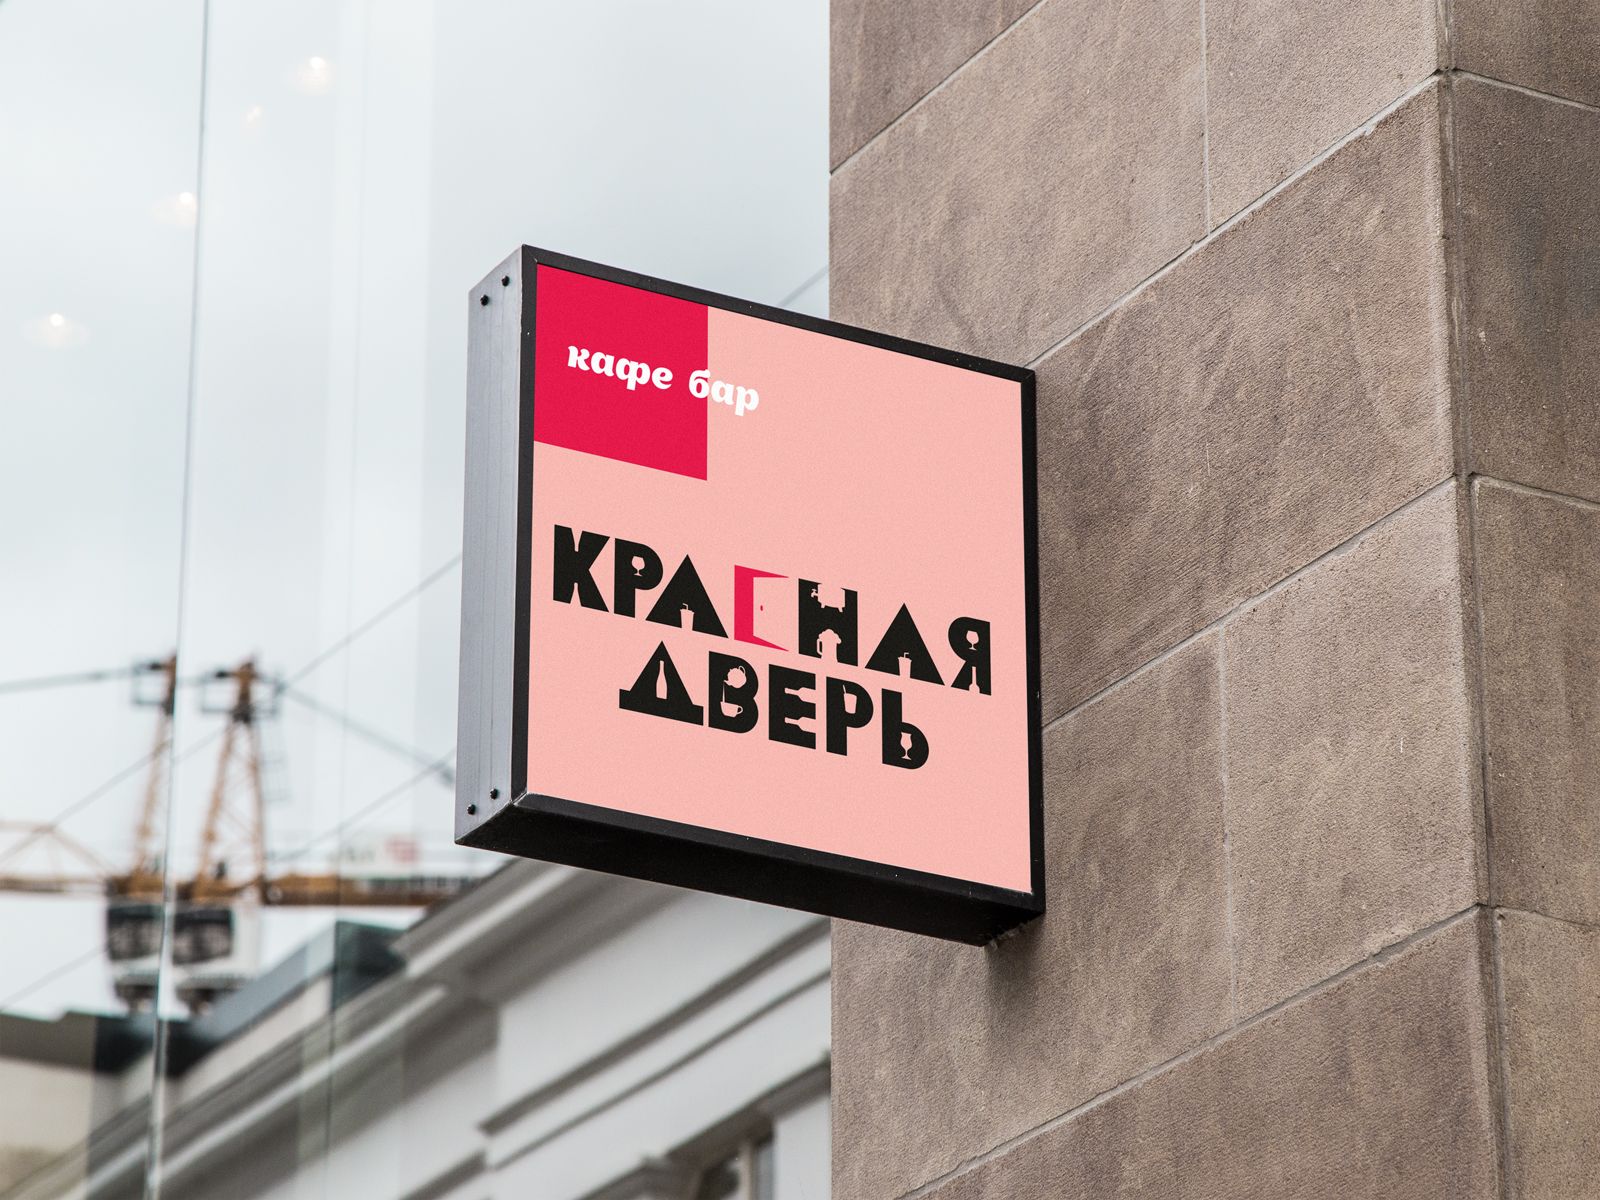 Логотип для Кафе-бар Красная Дверь - дизайнер ilim1973